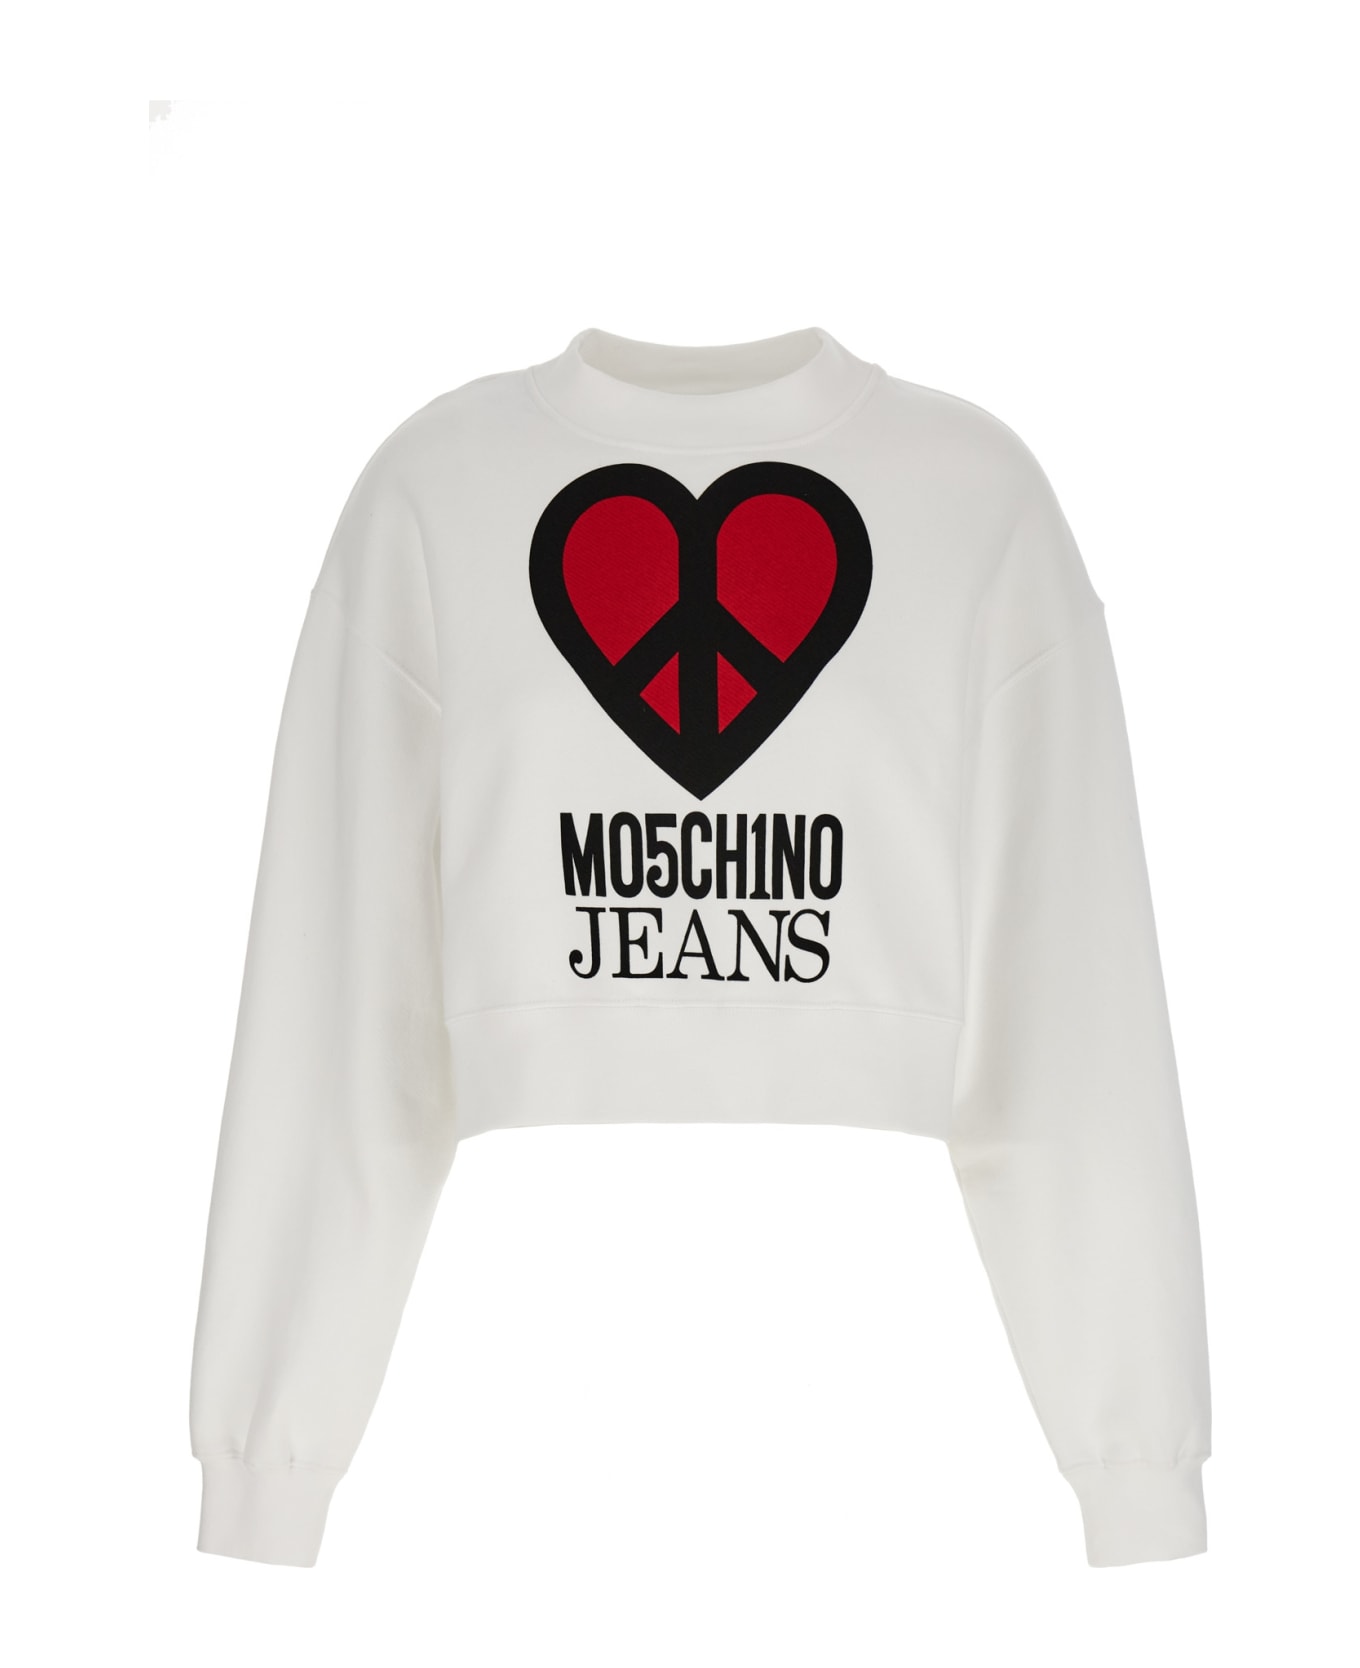 M05CH1N0 Jeans Logo Sweatshirt M05CH1N0 Jeans - WHITE